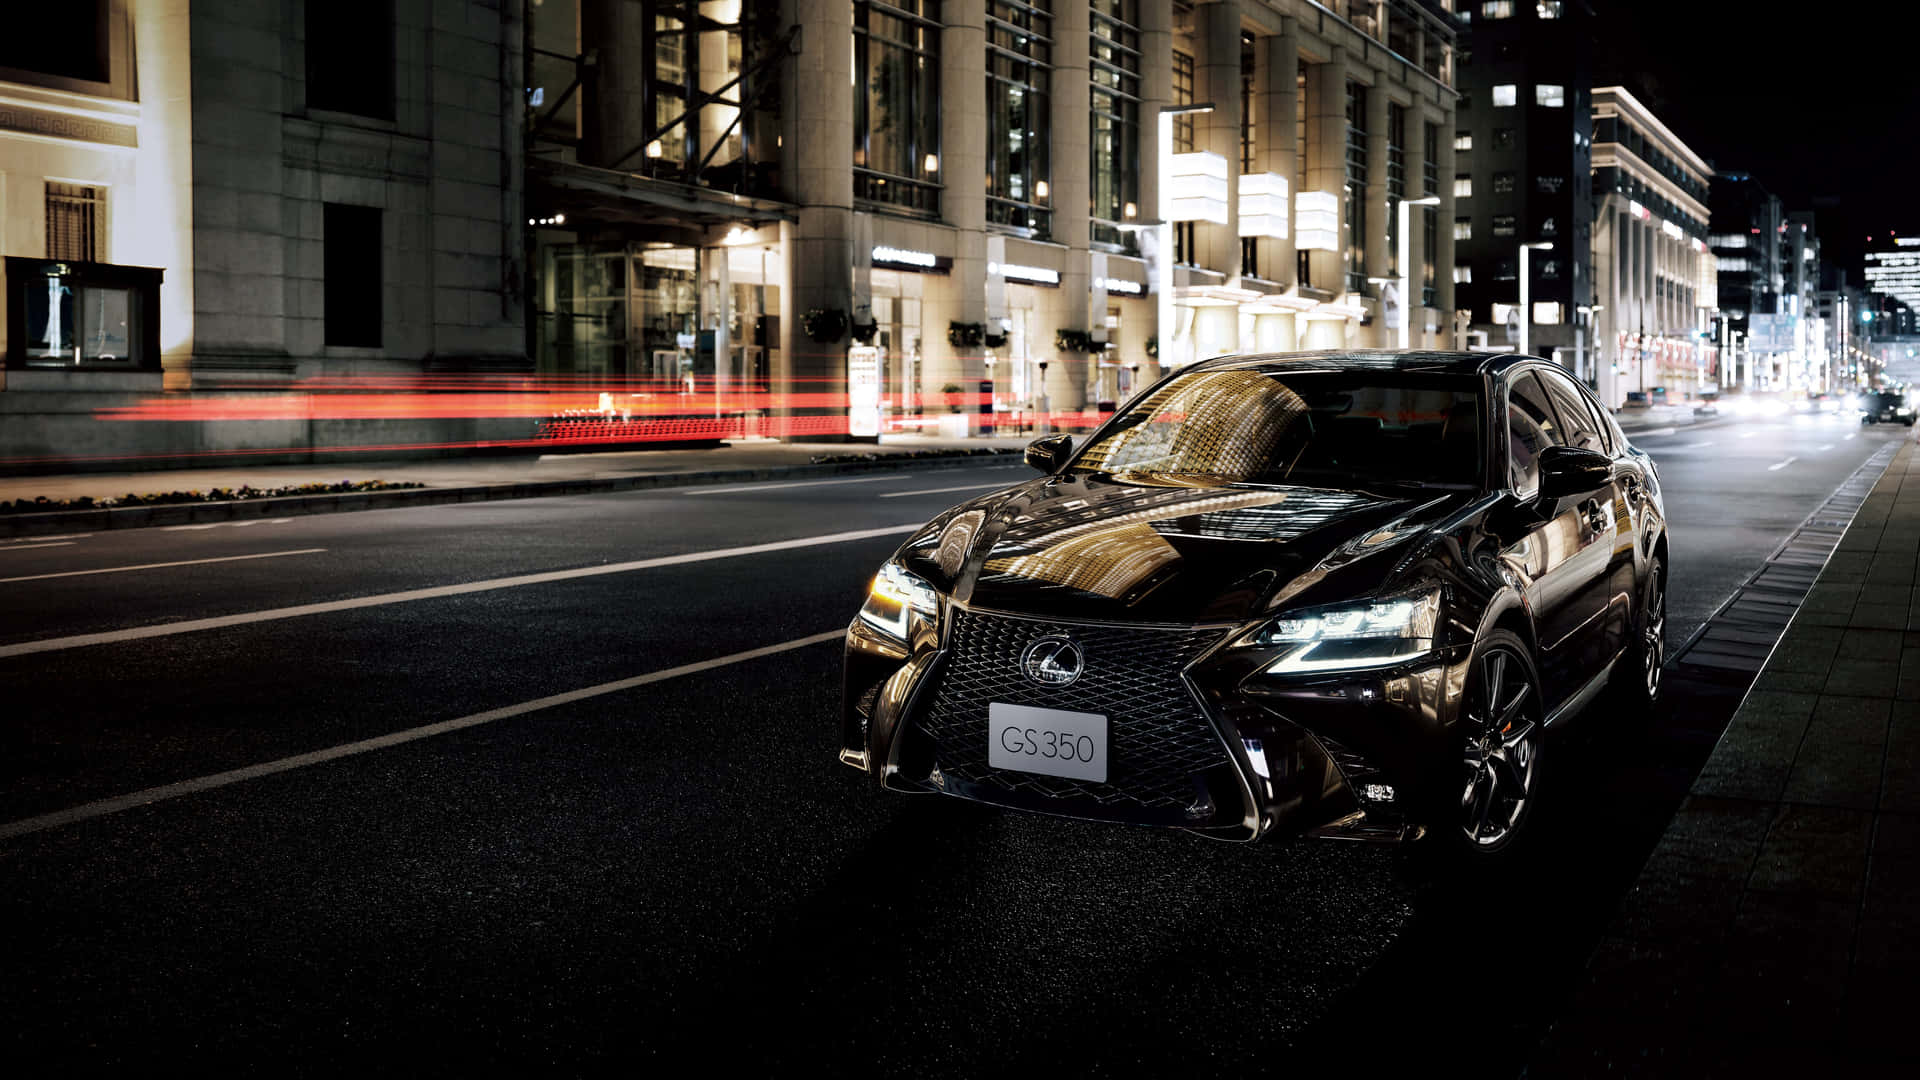 Sleek Lexus GS in motion Wallpaper